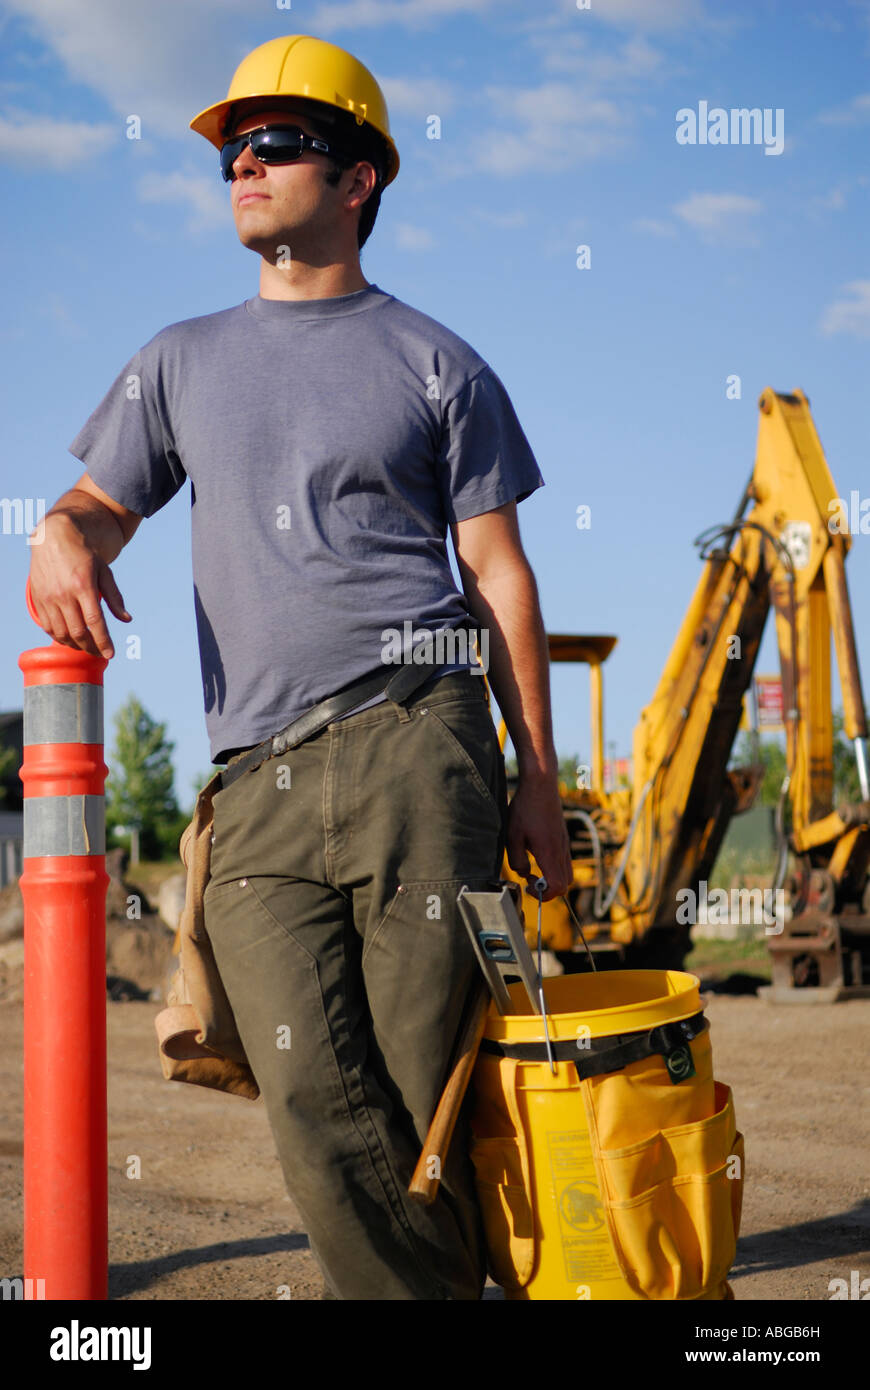 Junge männliche Bauarbeiter mit Schutzhelm anhalten mit Arbeit Eimer und Bagger im freien Stockfoto